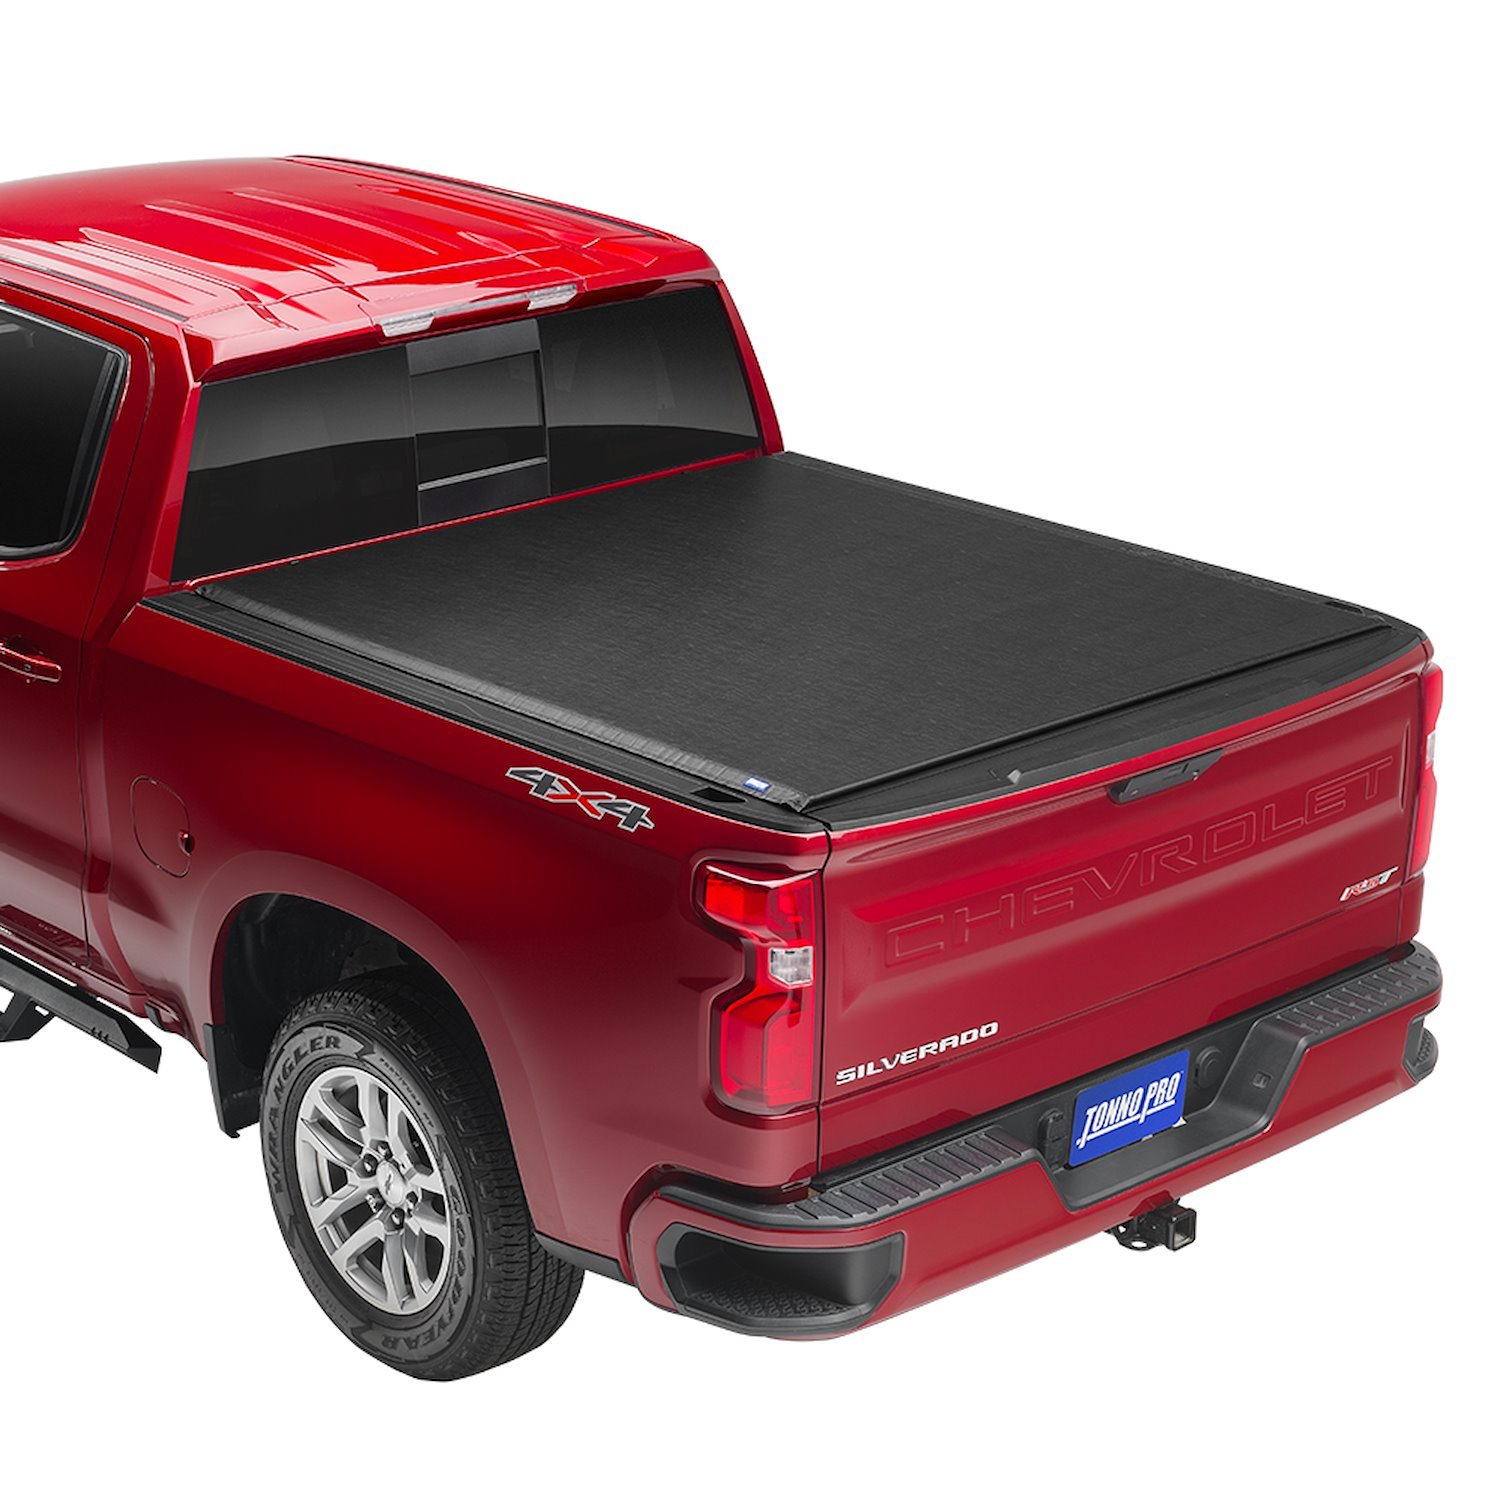 Lo Roll Tonneau Cover Fits Select GM Silverado/Sierra 2500 HD, 3500 HD Trucks [8 ft. 2 in. Bed]